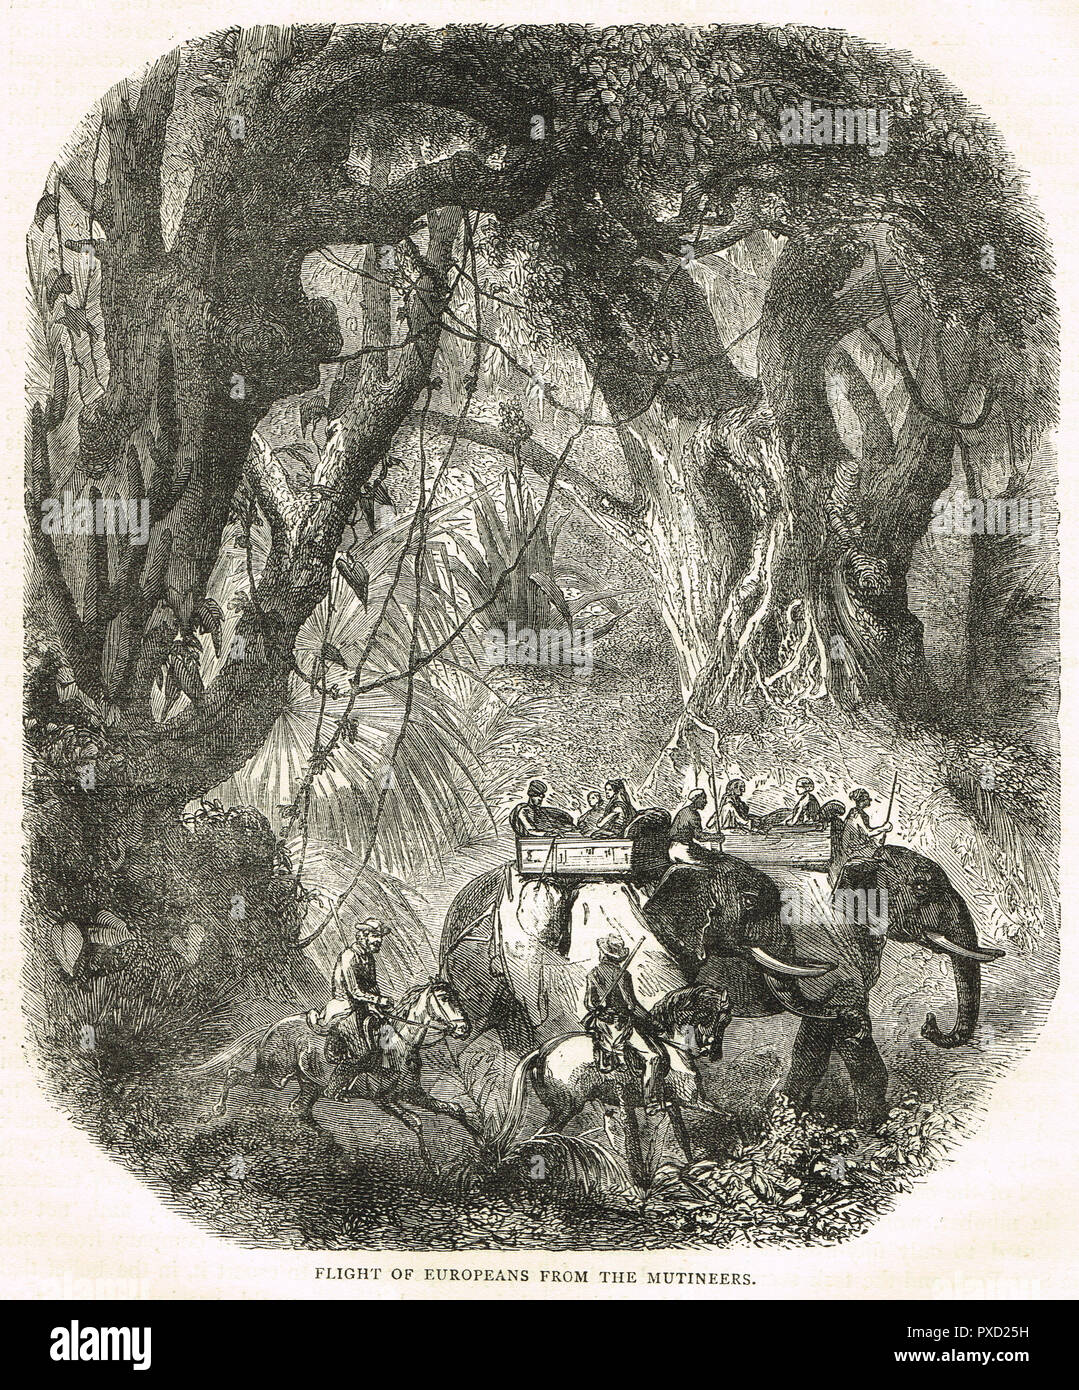 Vol d'Européens de mutins, lors de la rébellion indienne de 1857 Banque D'Images